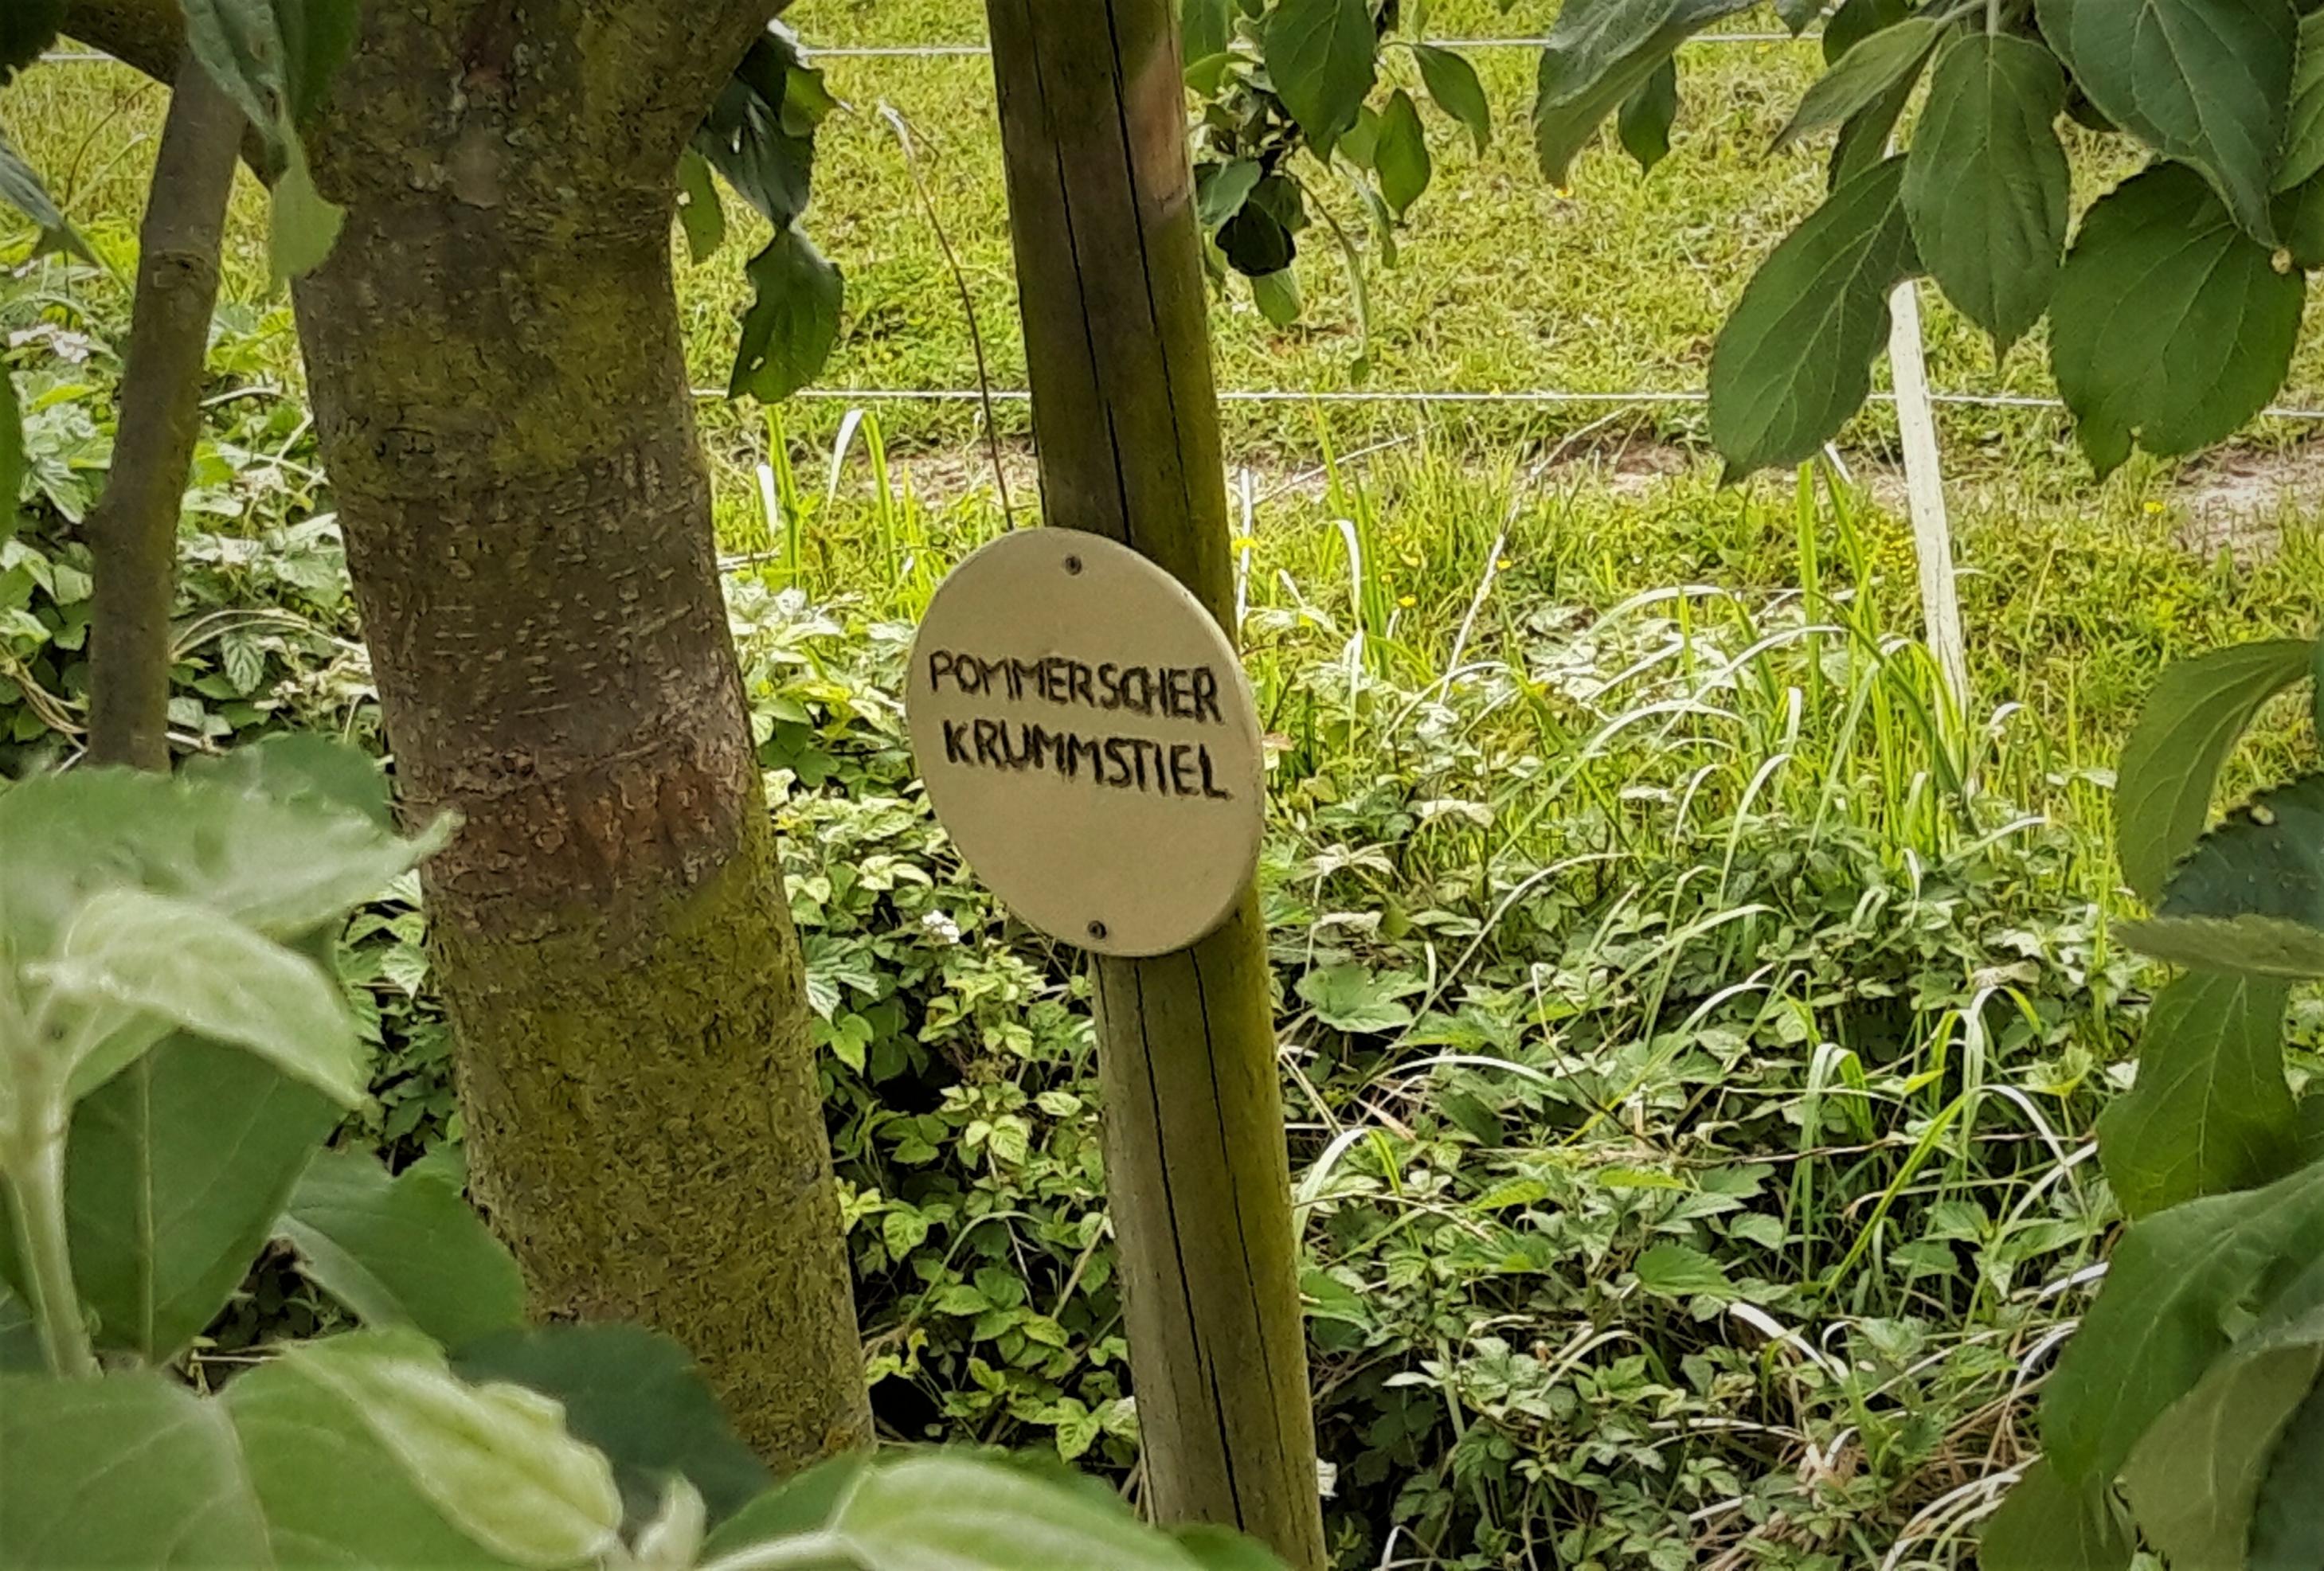 Holztäfelchen mit dem Namen der Apfelsorte, angebracht neben dem Stamm, hinter dem eine grüne Wiese schimmert.